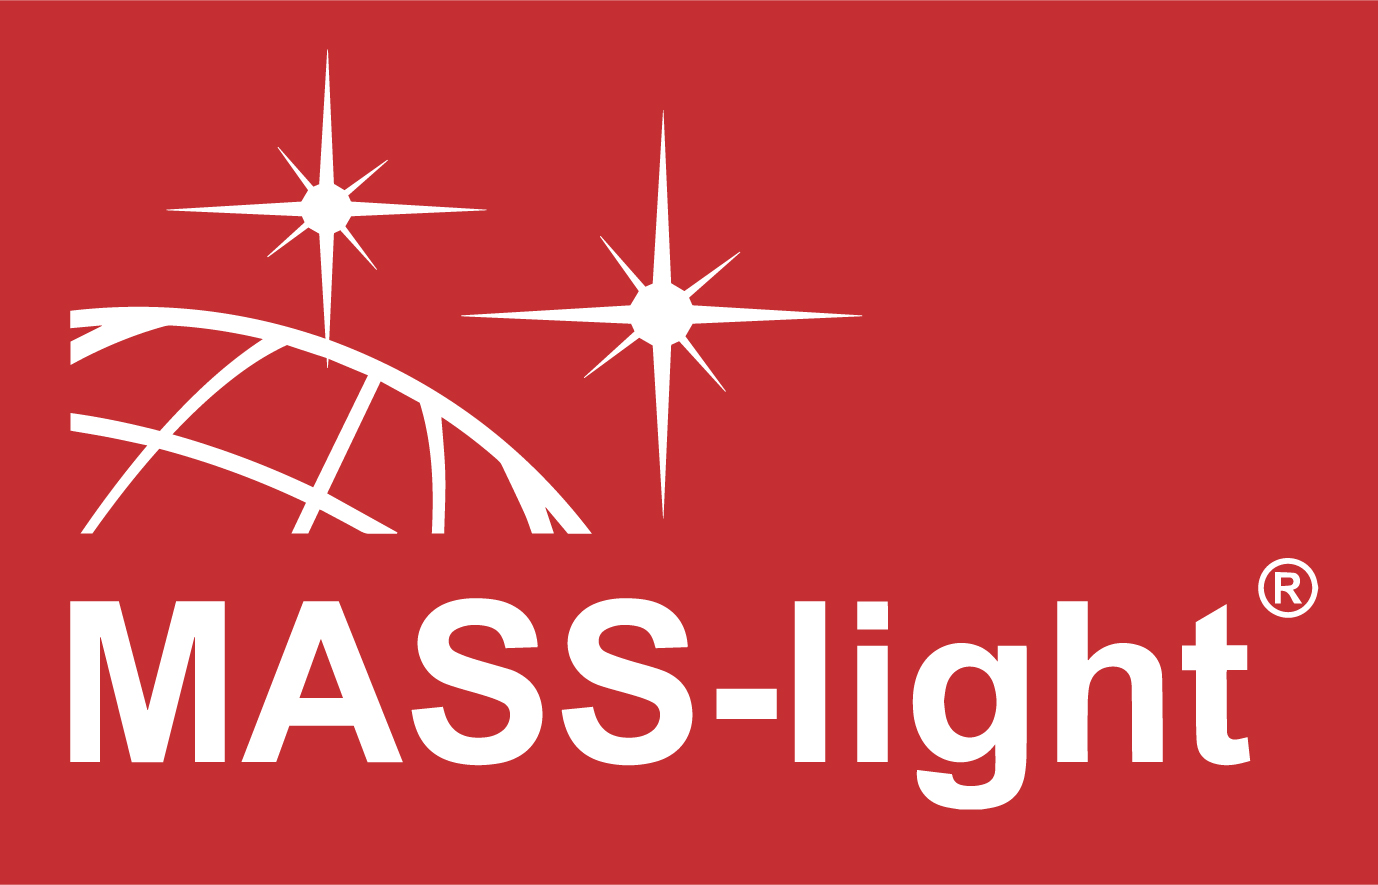 MASS-LIGHT